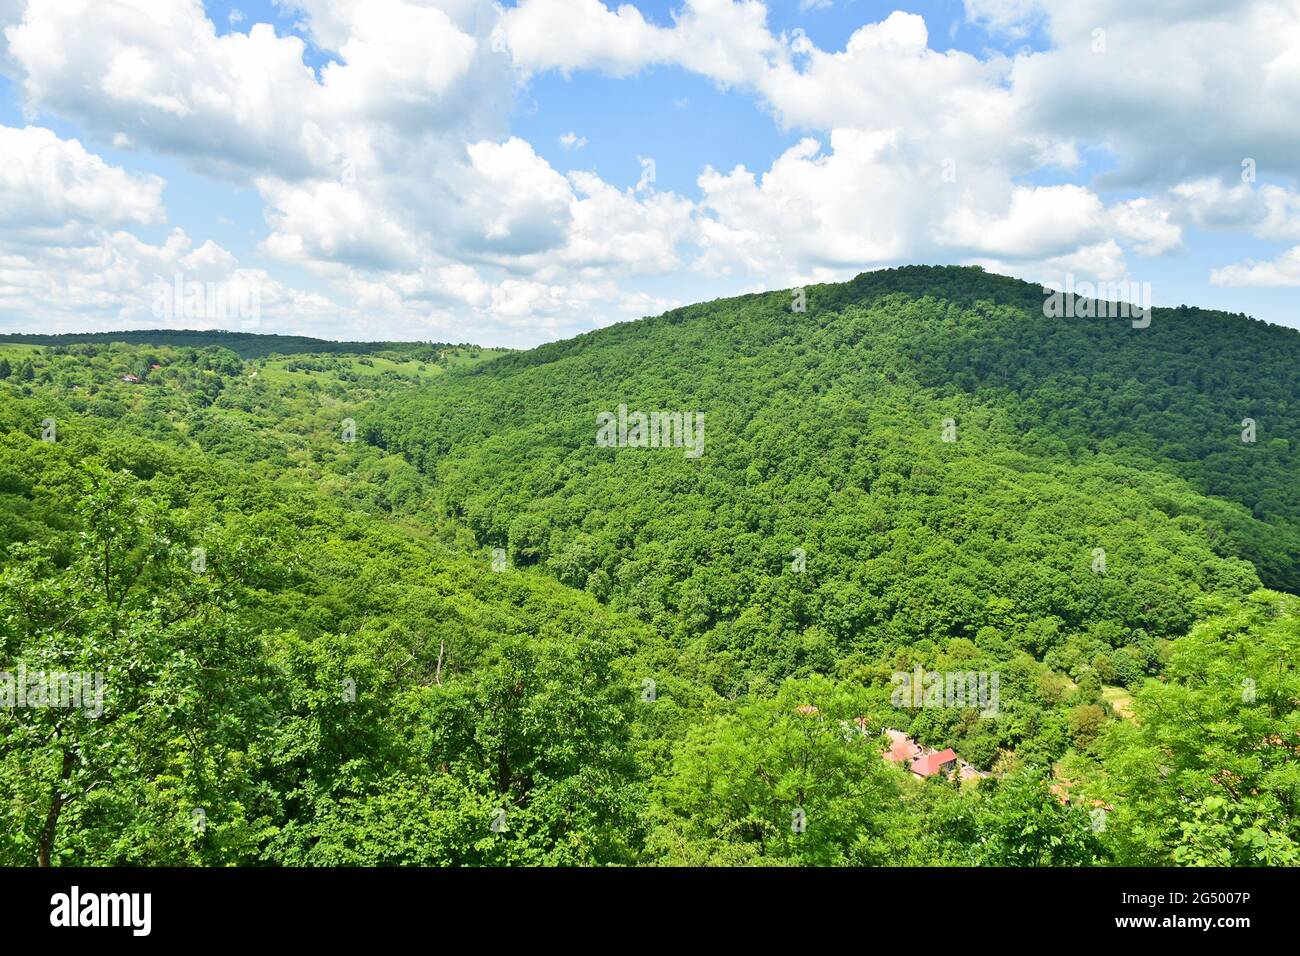 View of Szarvasko village and the Bukk mountains, Hungary Stock Photo